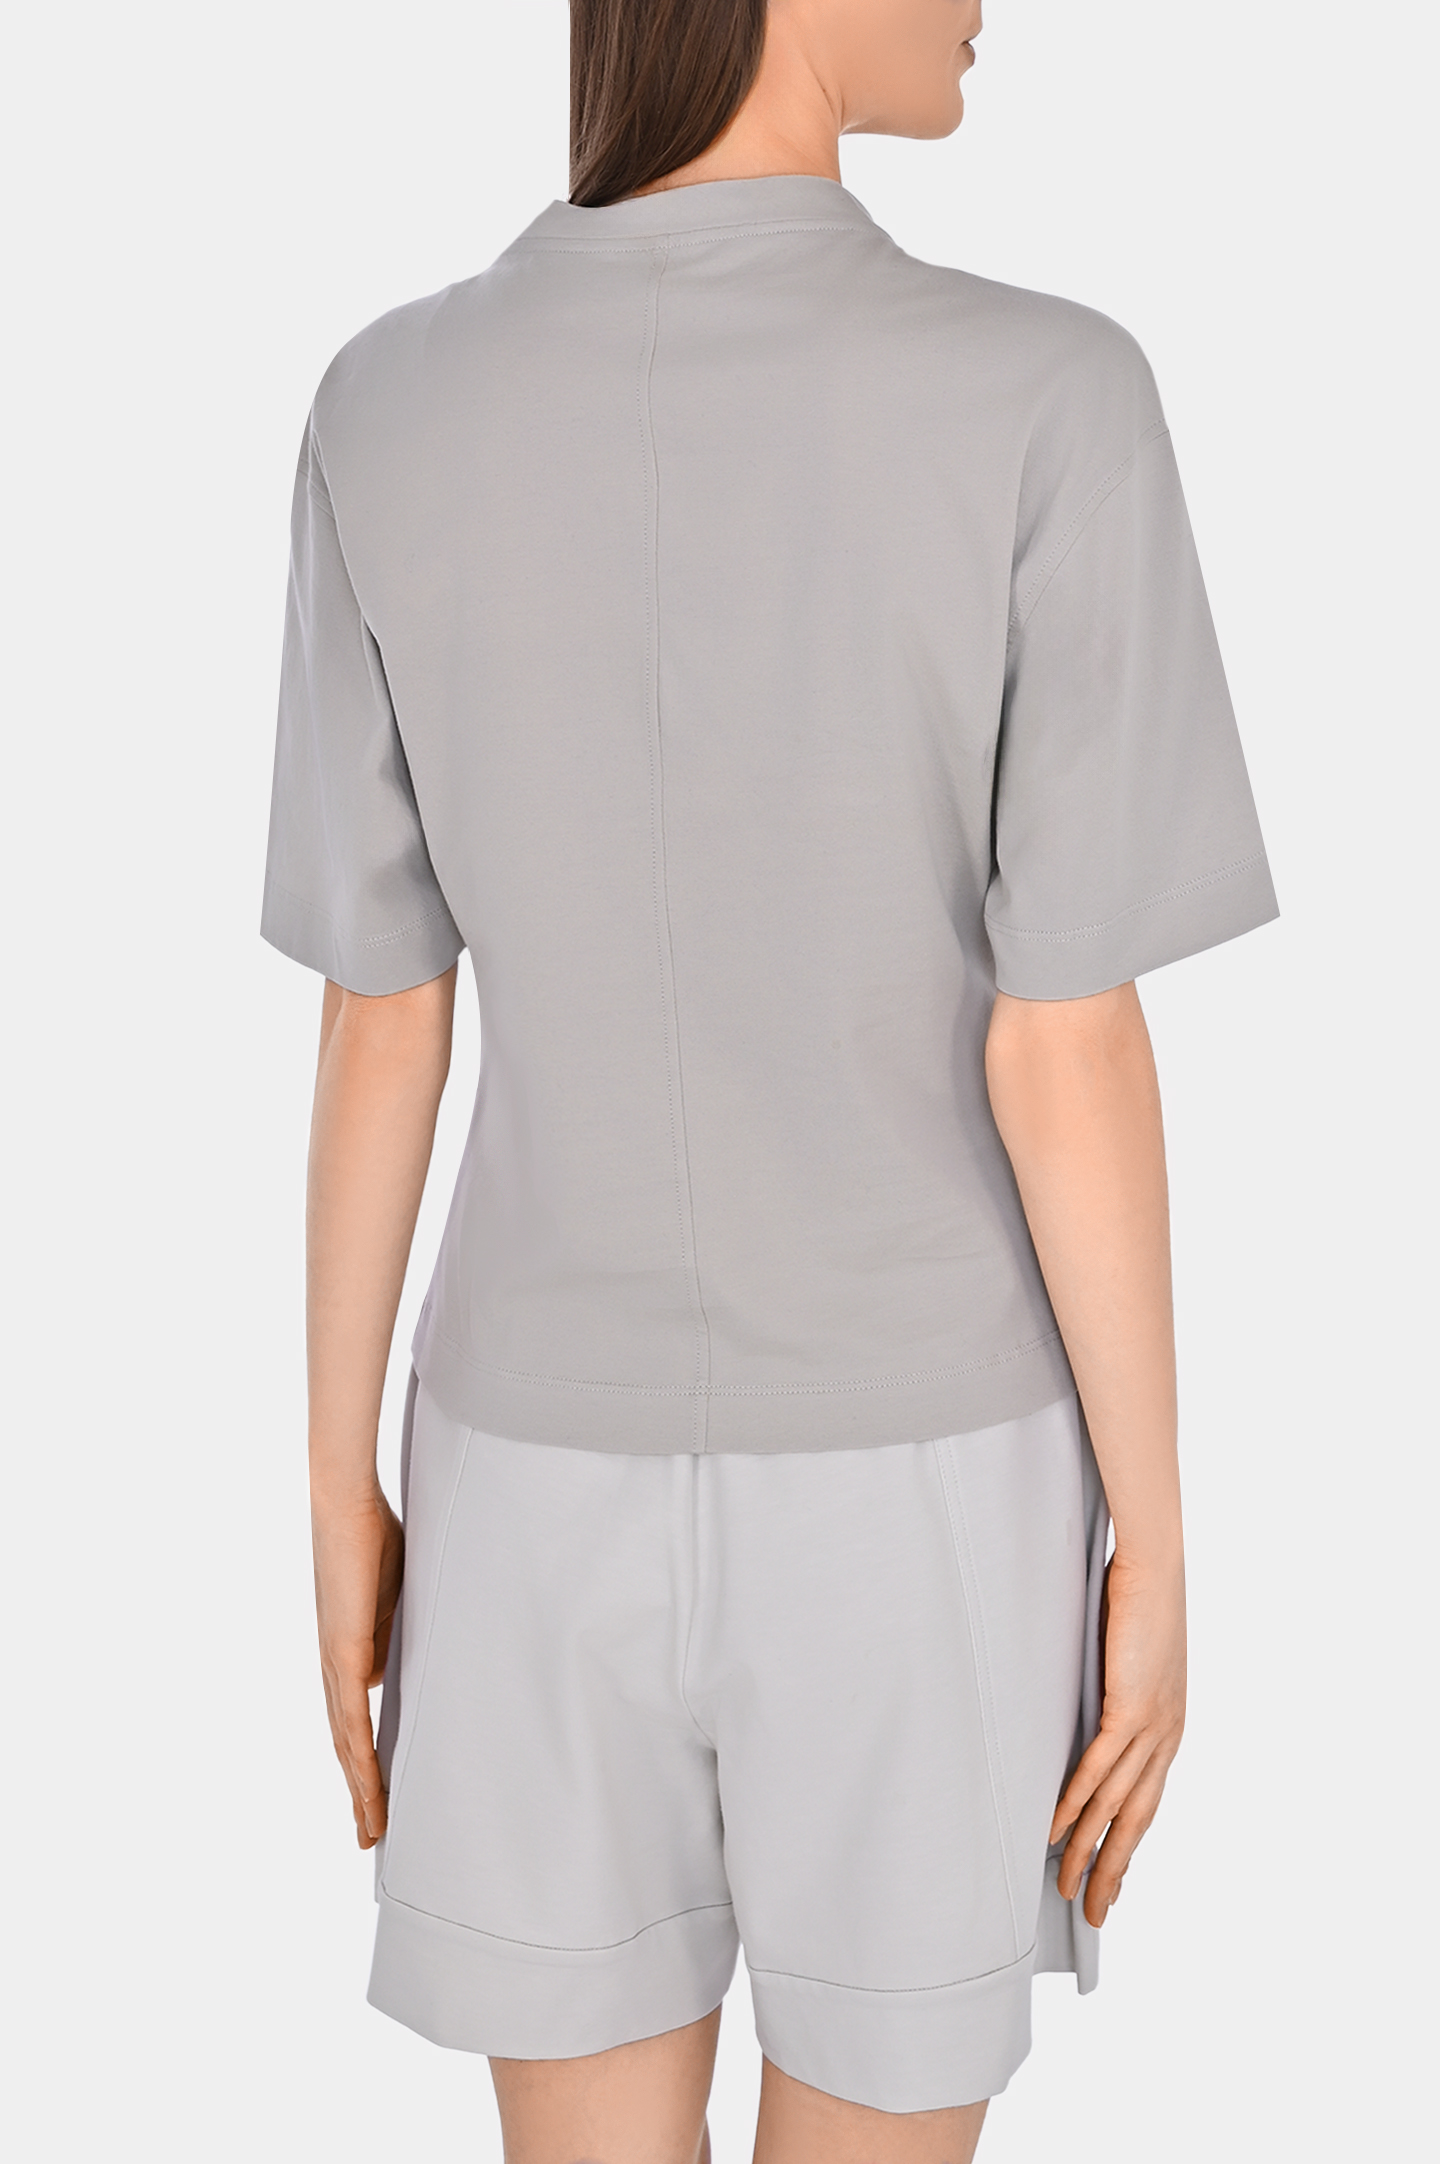 Хлопковая футболка с декором BRUNELLO  CUCINELLI M0T81EL330, цвет: Серый, Женский